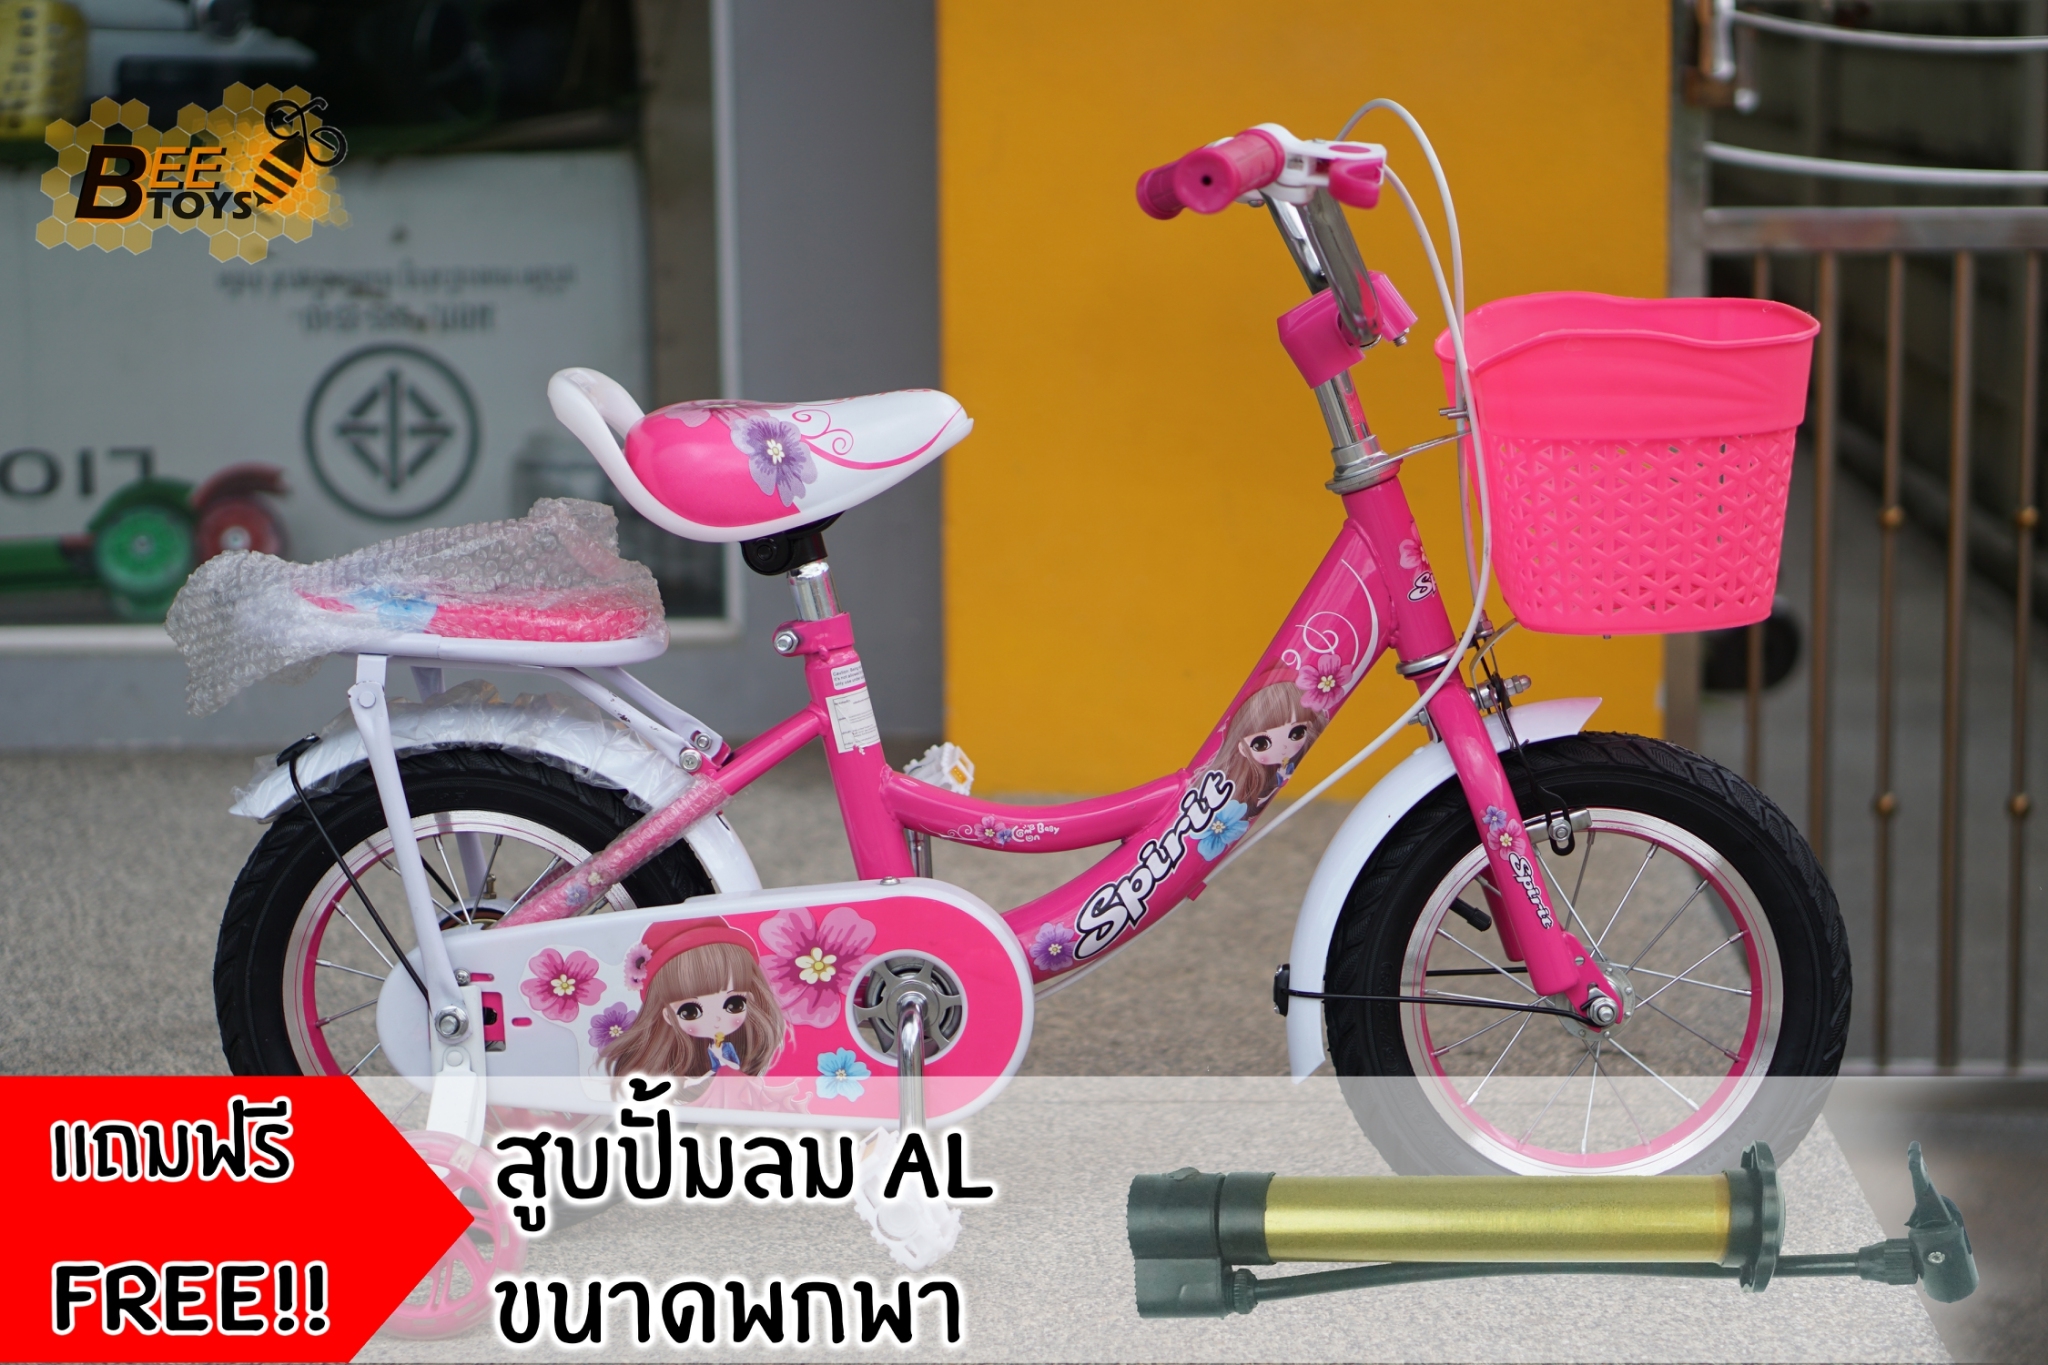 จักรยาน 12 นิ้ว รุ่น Spirit สาวน้อยน่ารัก ลายดอกไม้ สำหรับ เด็ก 2-4 ขวบ คุณภาพดี ราคาถูก beetoy เก็บเงินปลายทางได้